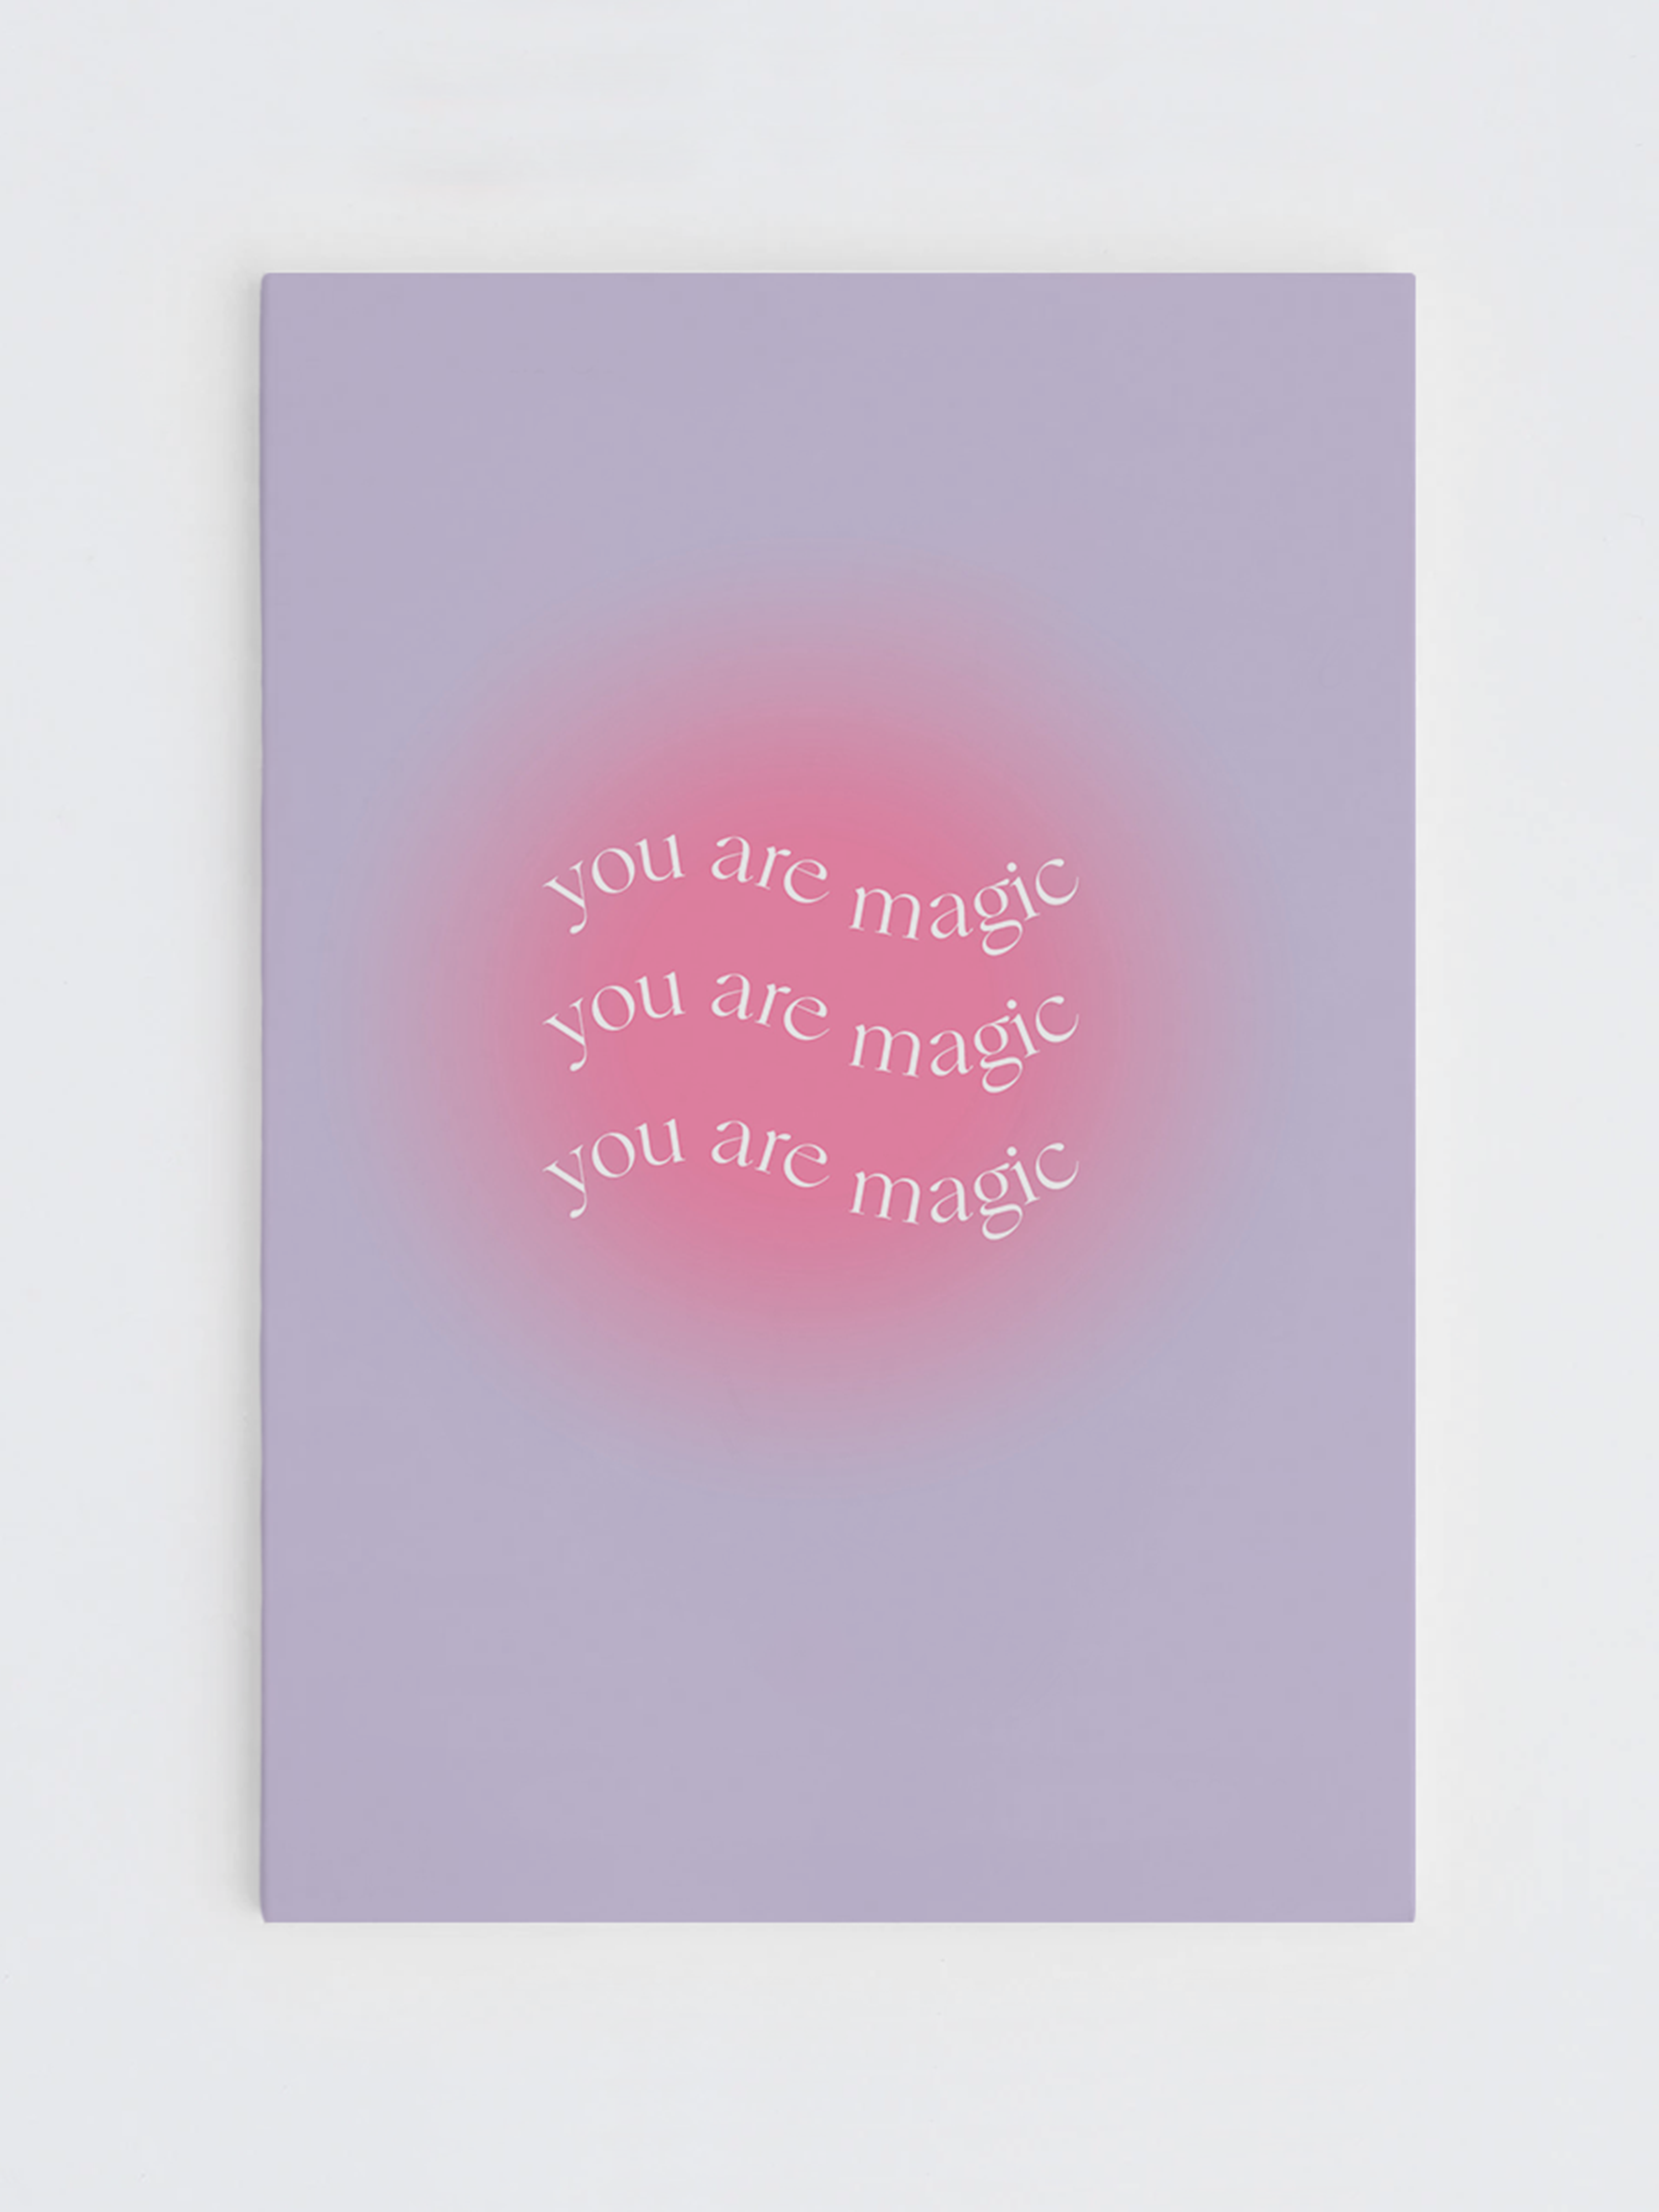 you are magic card